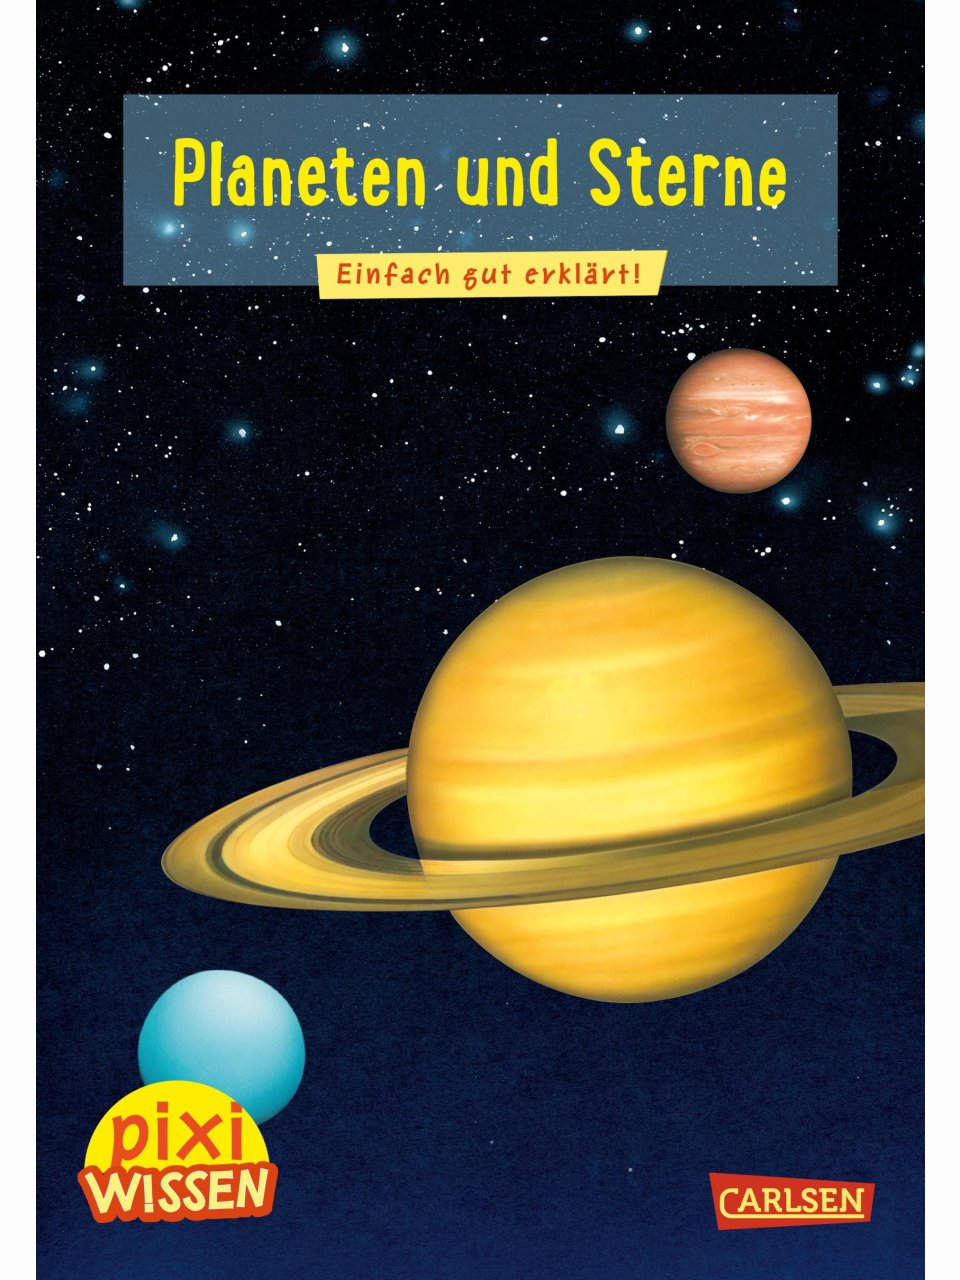 Planeten und Sterne (Pixi Wissen)